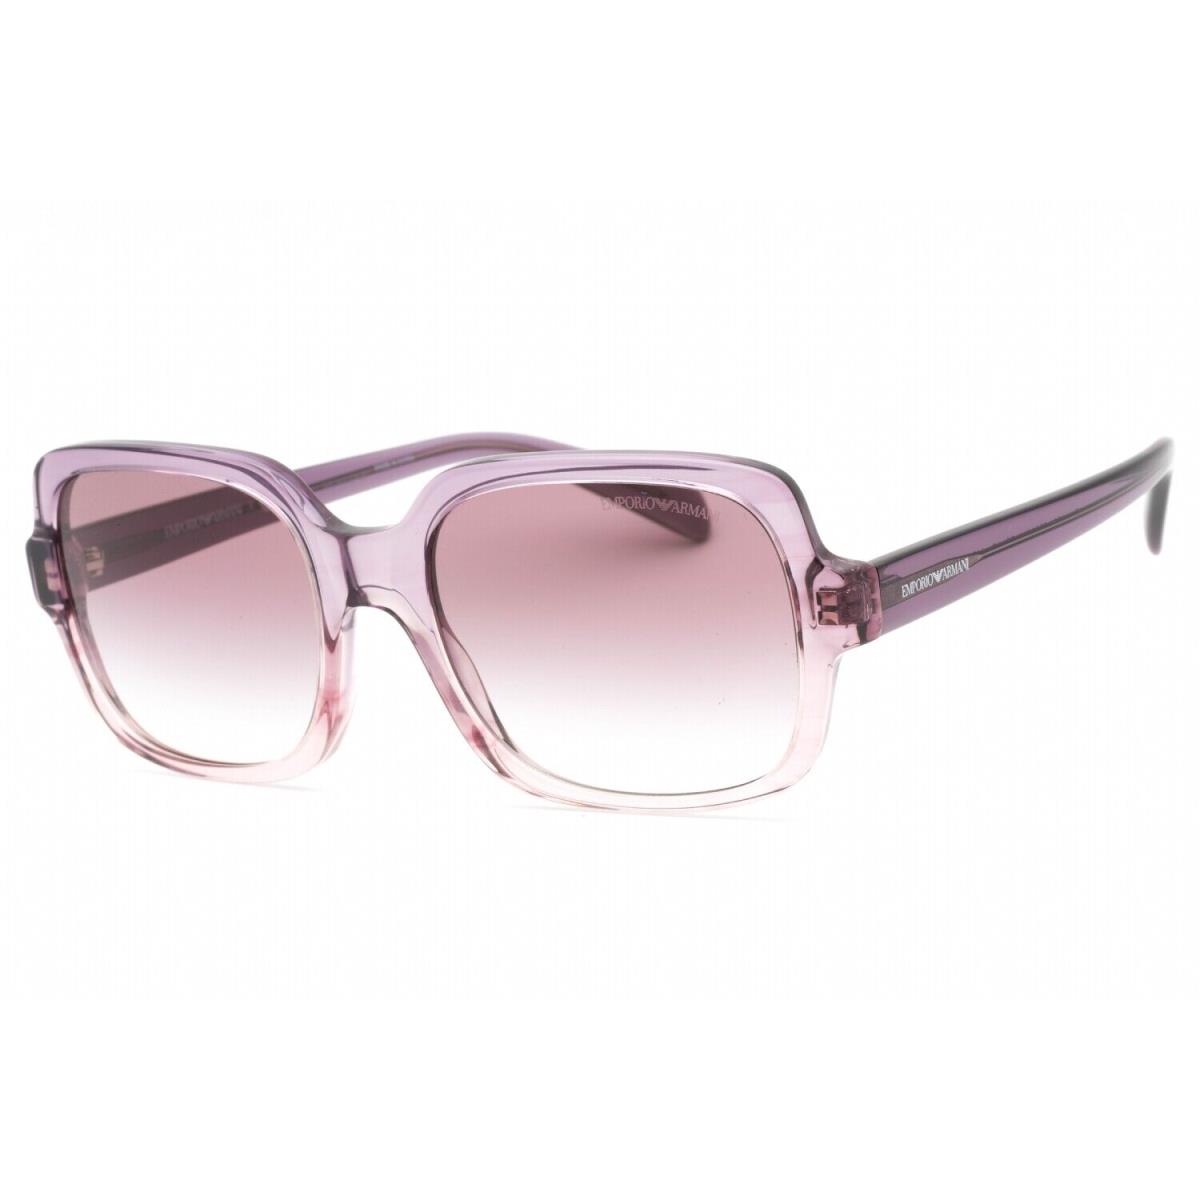 Emporio Armani EA4195-59668H-55 Sunglasses Size 55mm 140mm 19mm Purple Women N